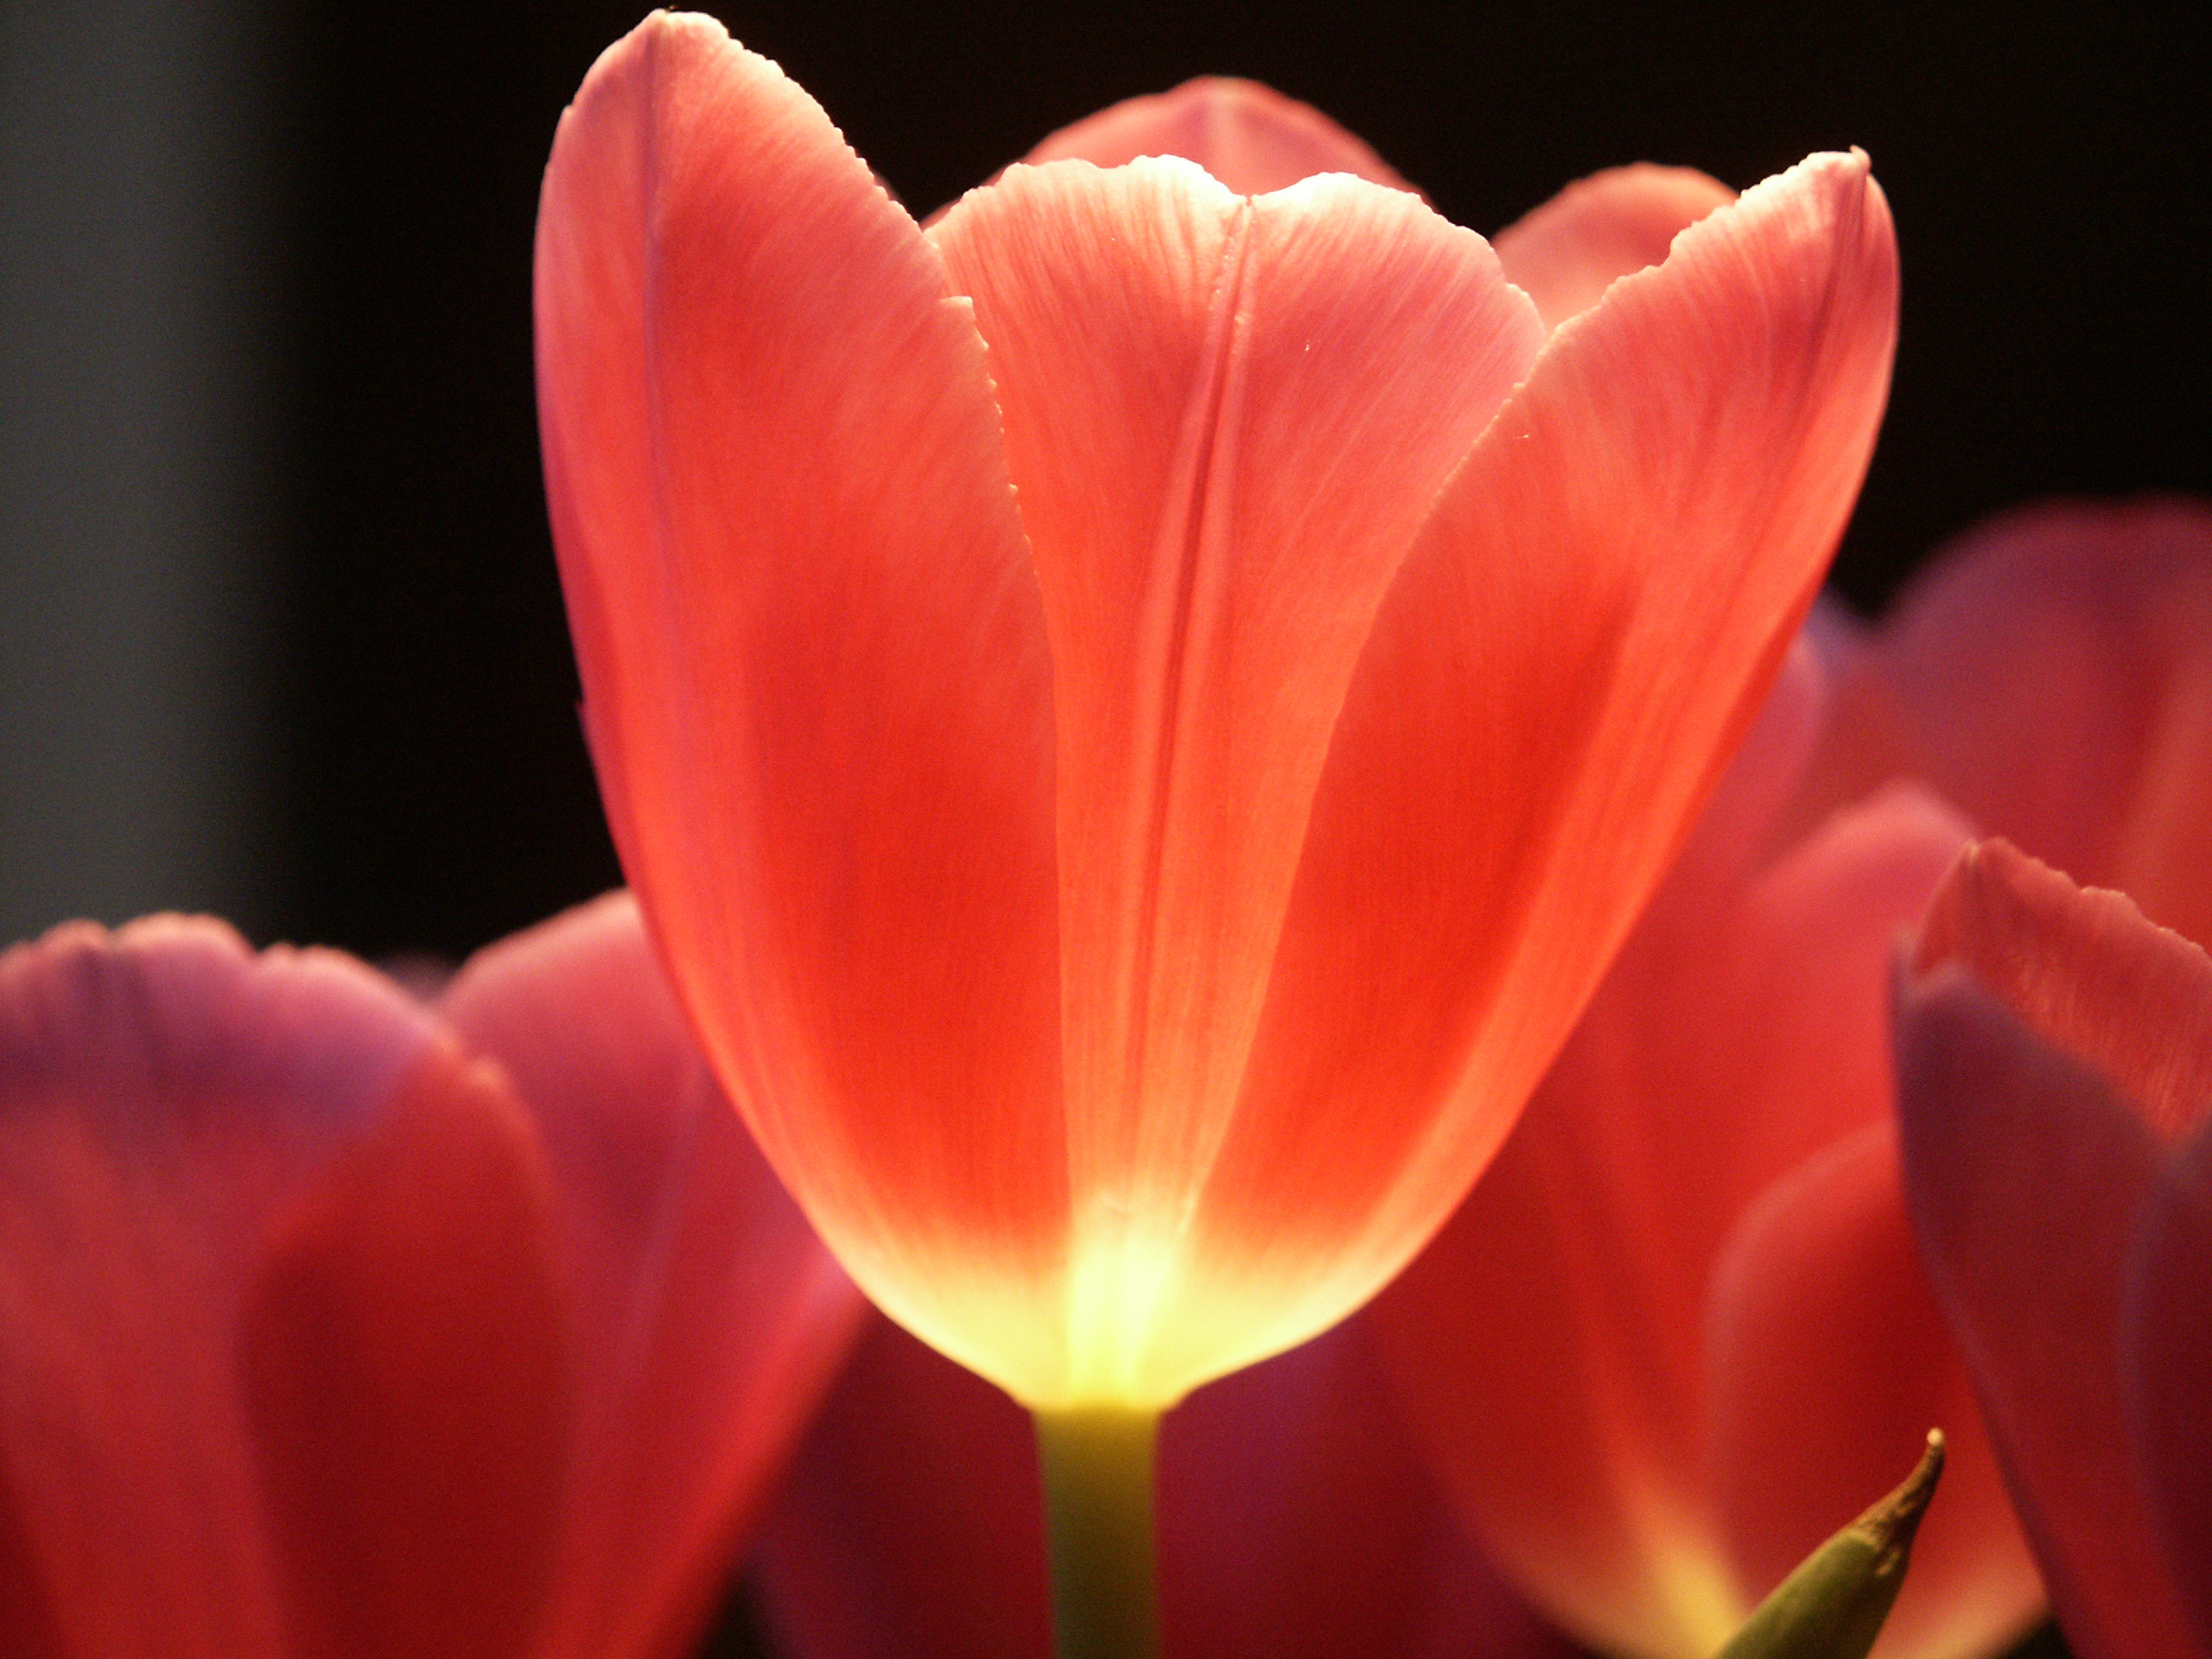 red tulip impression